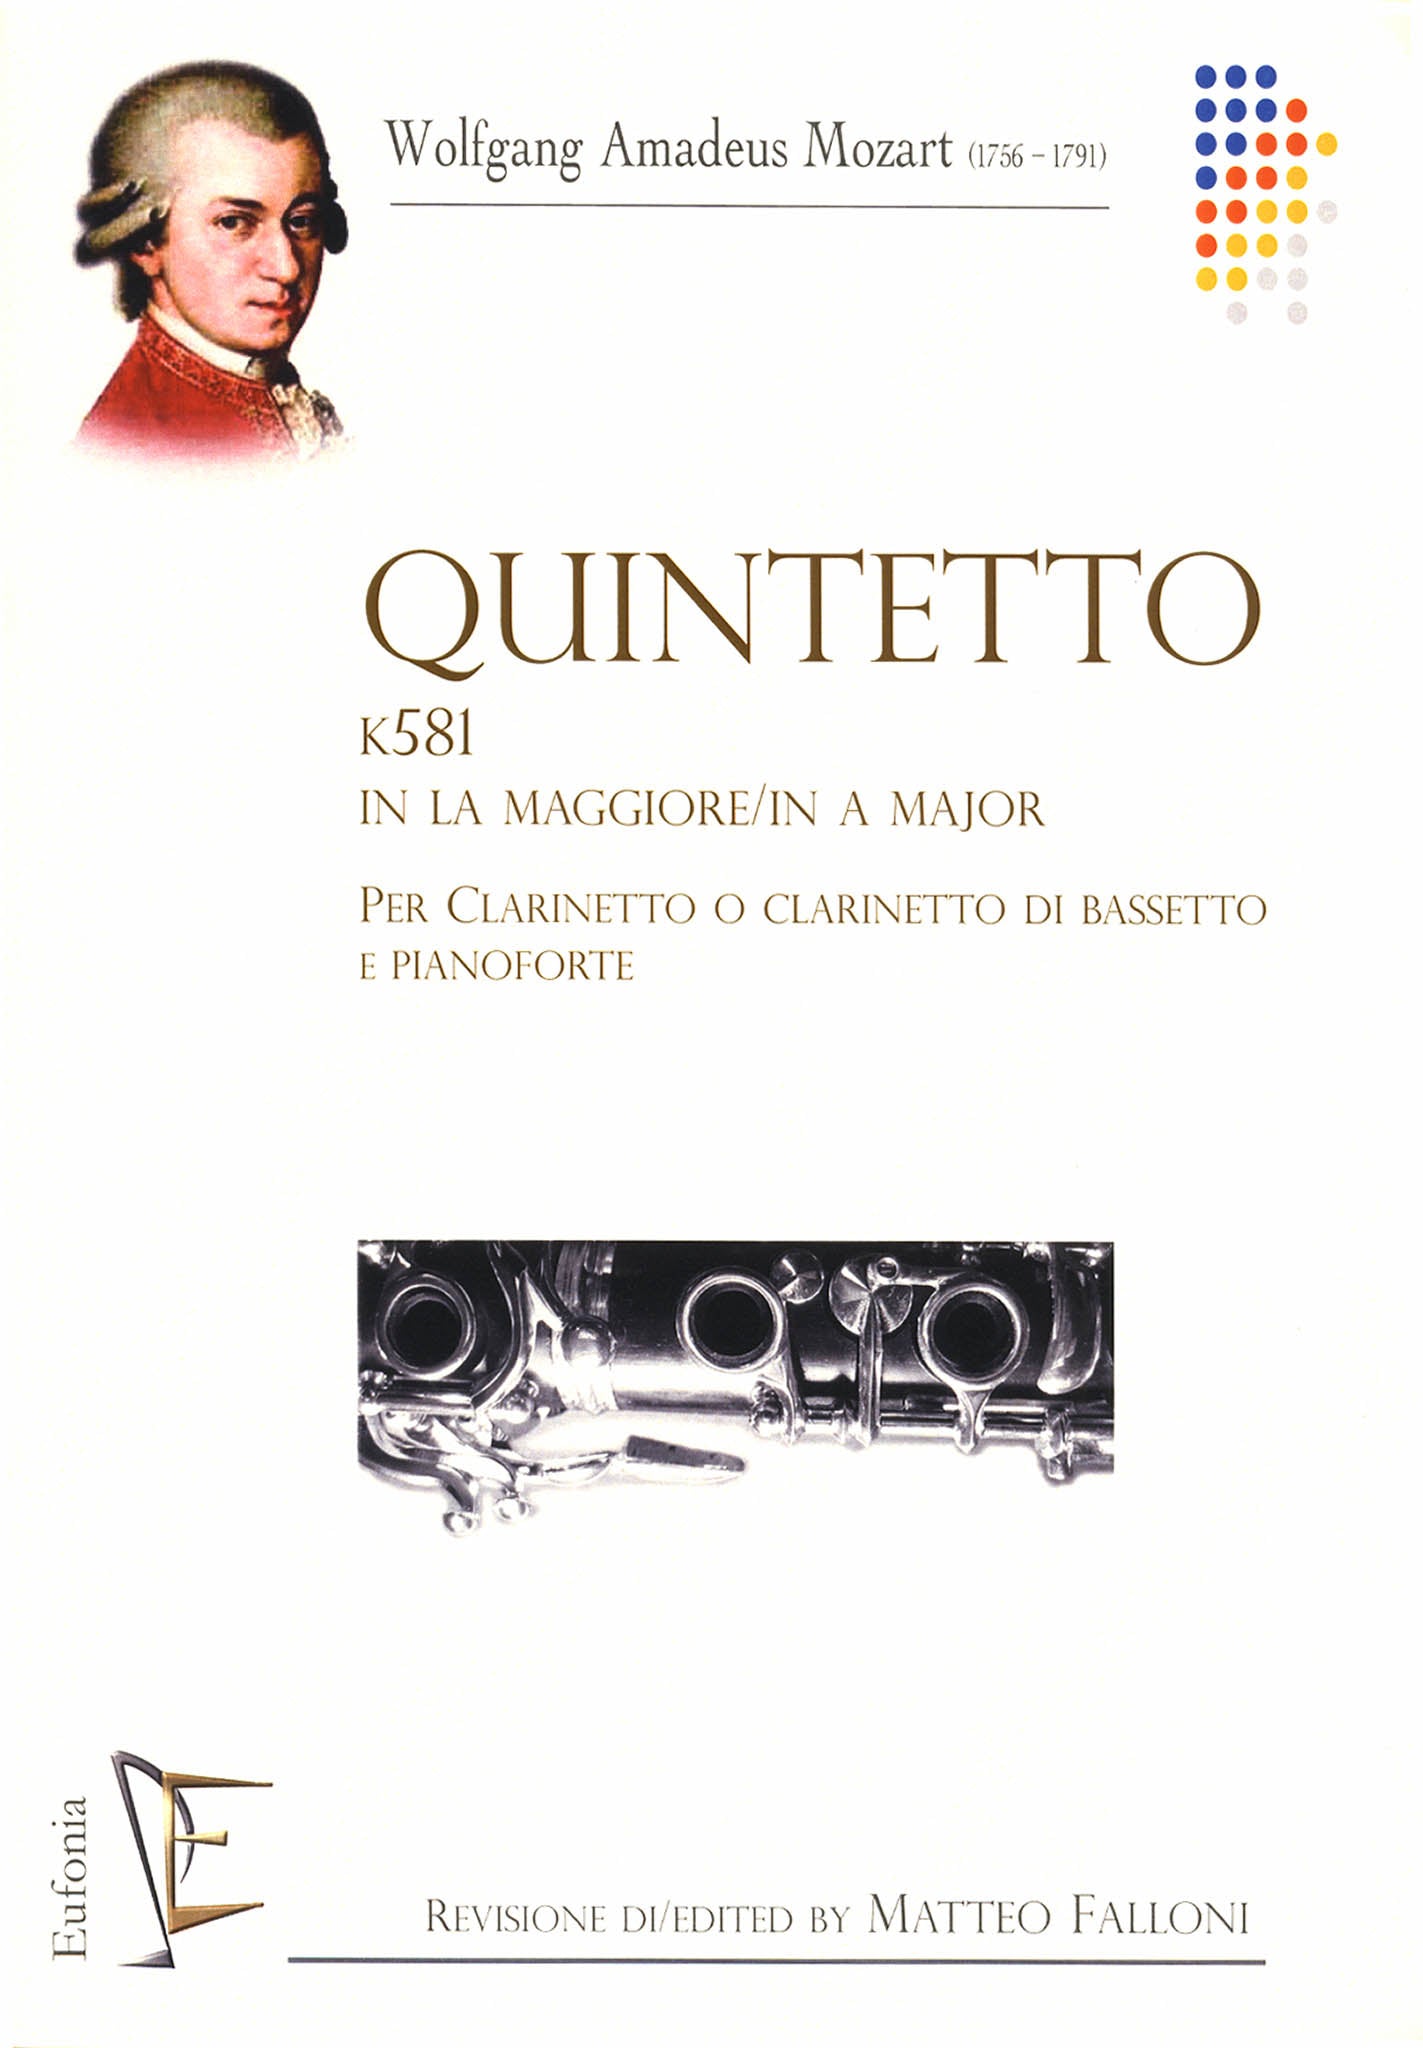 Clarinet Quintet, K. 581 Cover